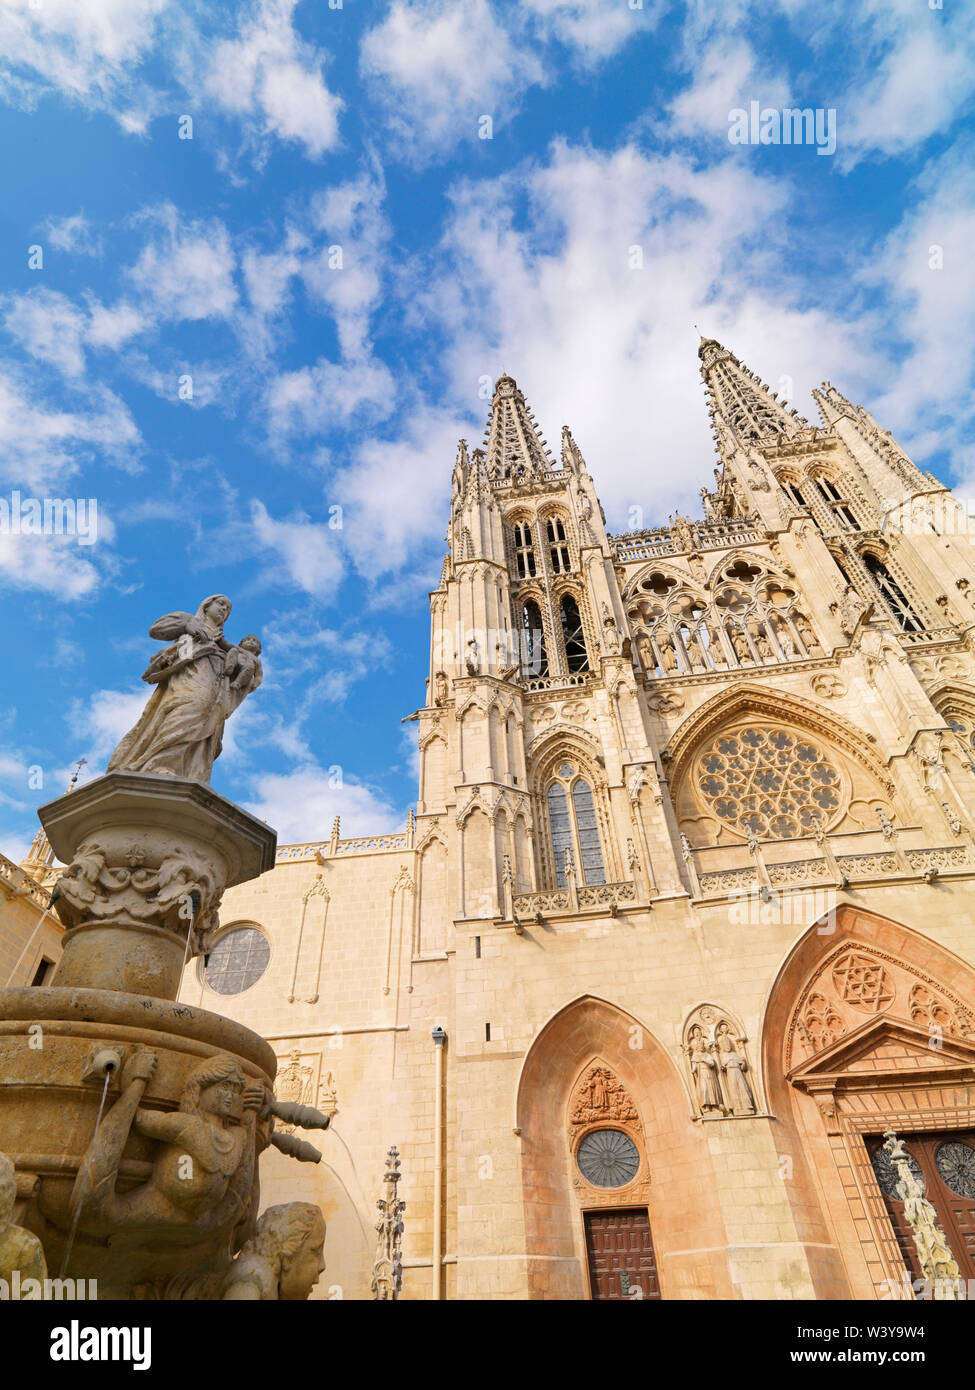 España, Castilla y León, Burgos, Plaza de Santa María y Santa María de la catedral de Burgos; Sitio de Patrimonio Mundial de la UNESCO Foto de stock